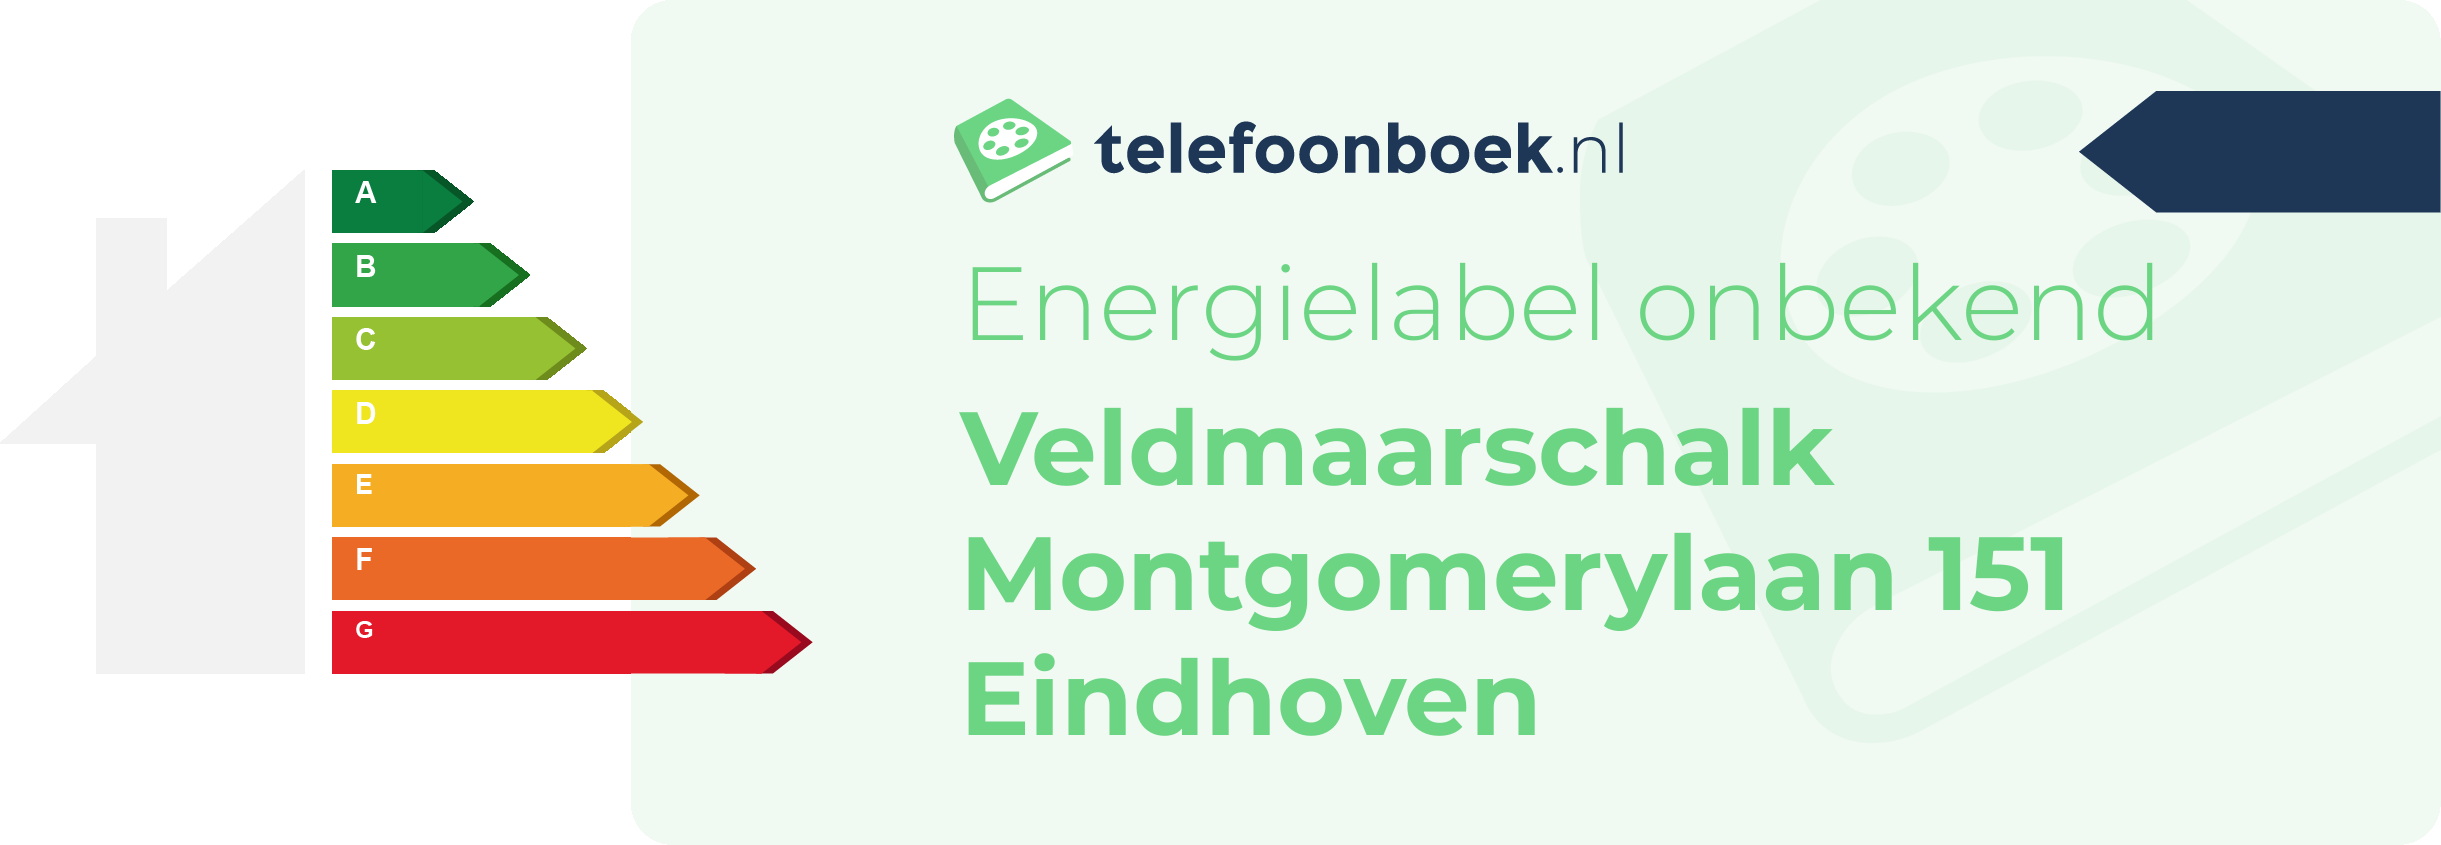 Energielabel Veldmaarschalk Montgomerylaan 151 Eindhoven